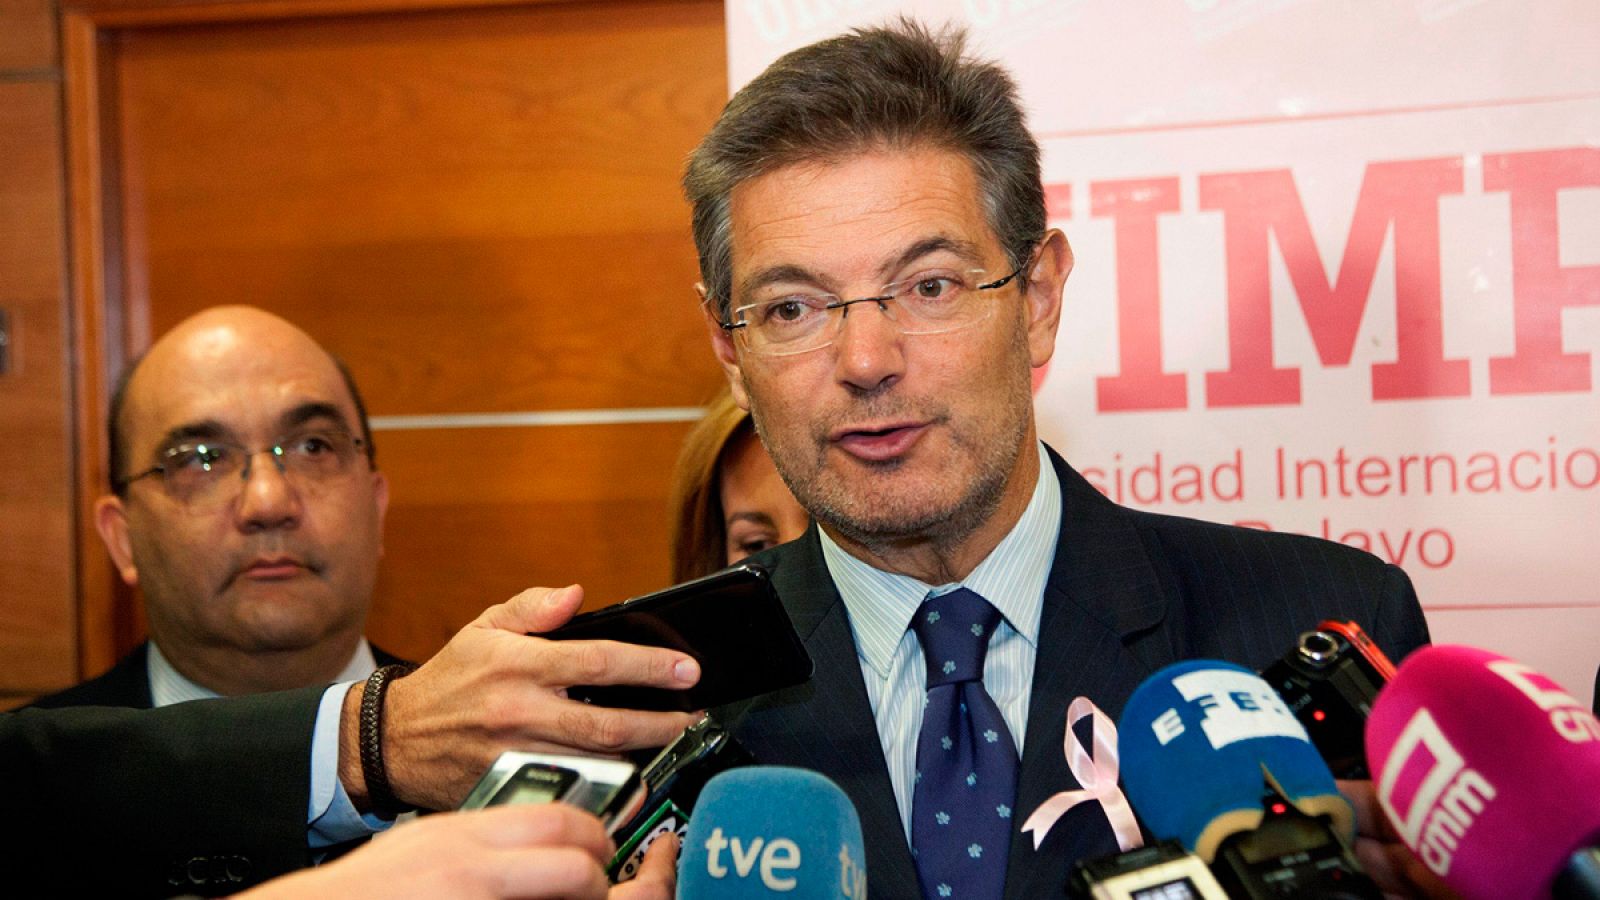 El ministro de Justicia Rafael Catalá interviene en unas jornadas de la Universidad Internacional Menéndez Pelayo en Cuenca